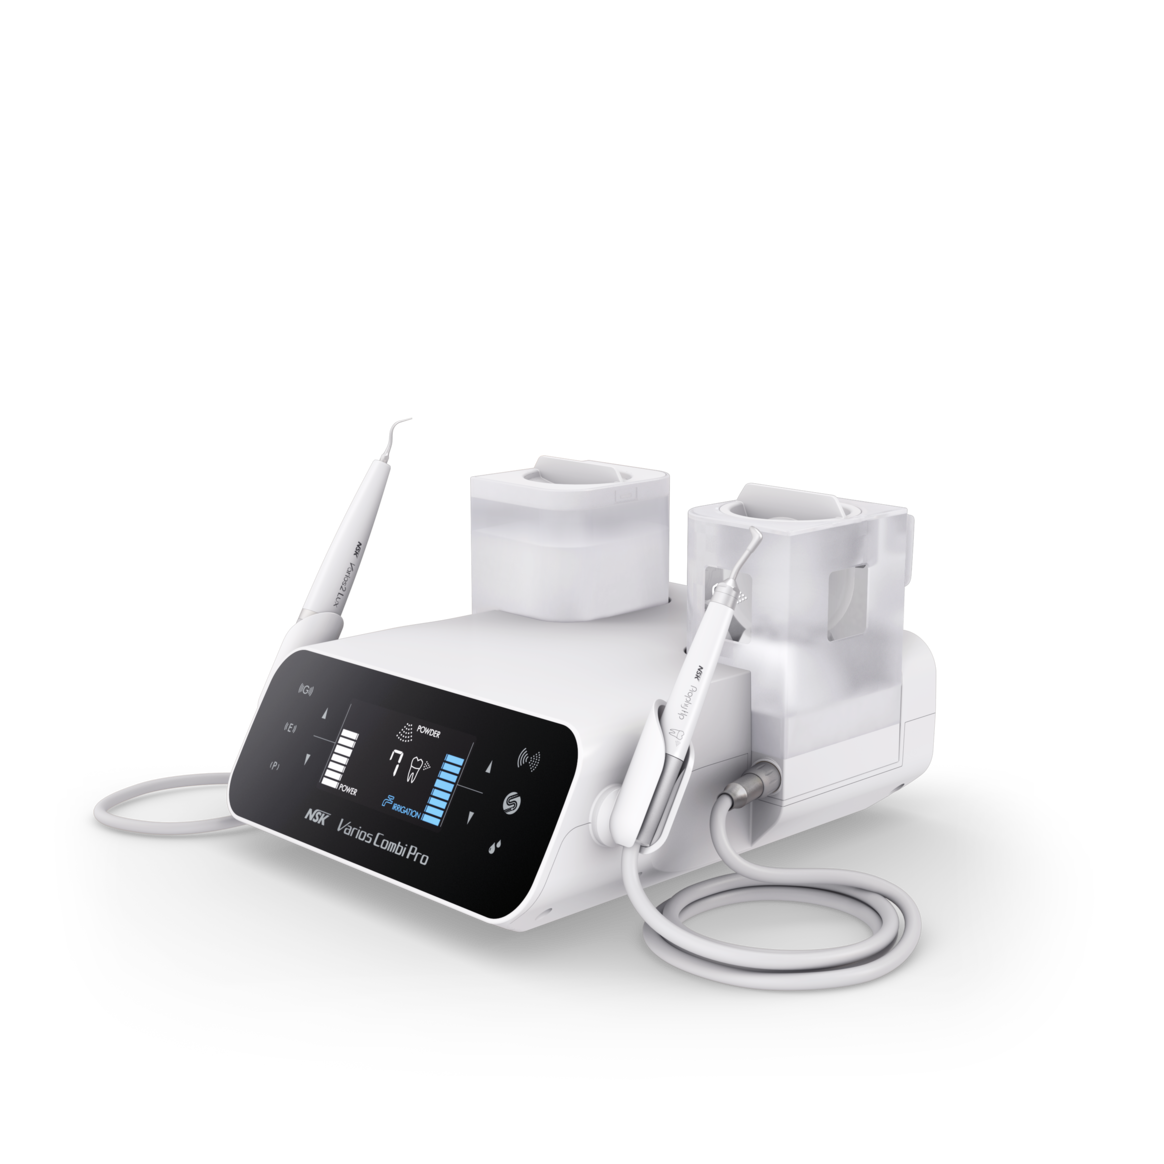 Ultraschall-Scaler und Pulverstrahl-Gerät in einem  - Innovative Dentalgeräte bei Dental Witt